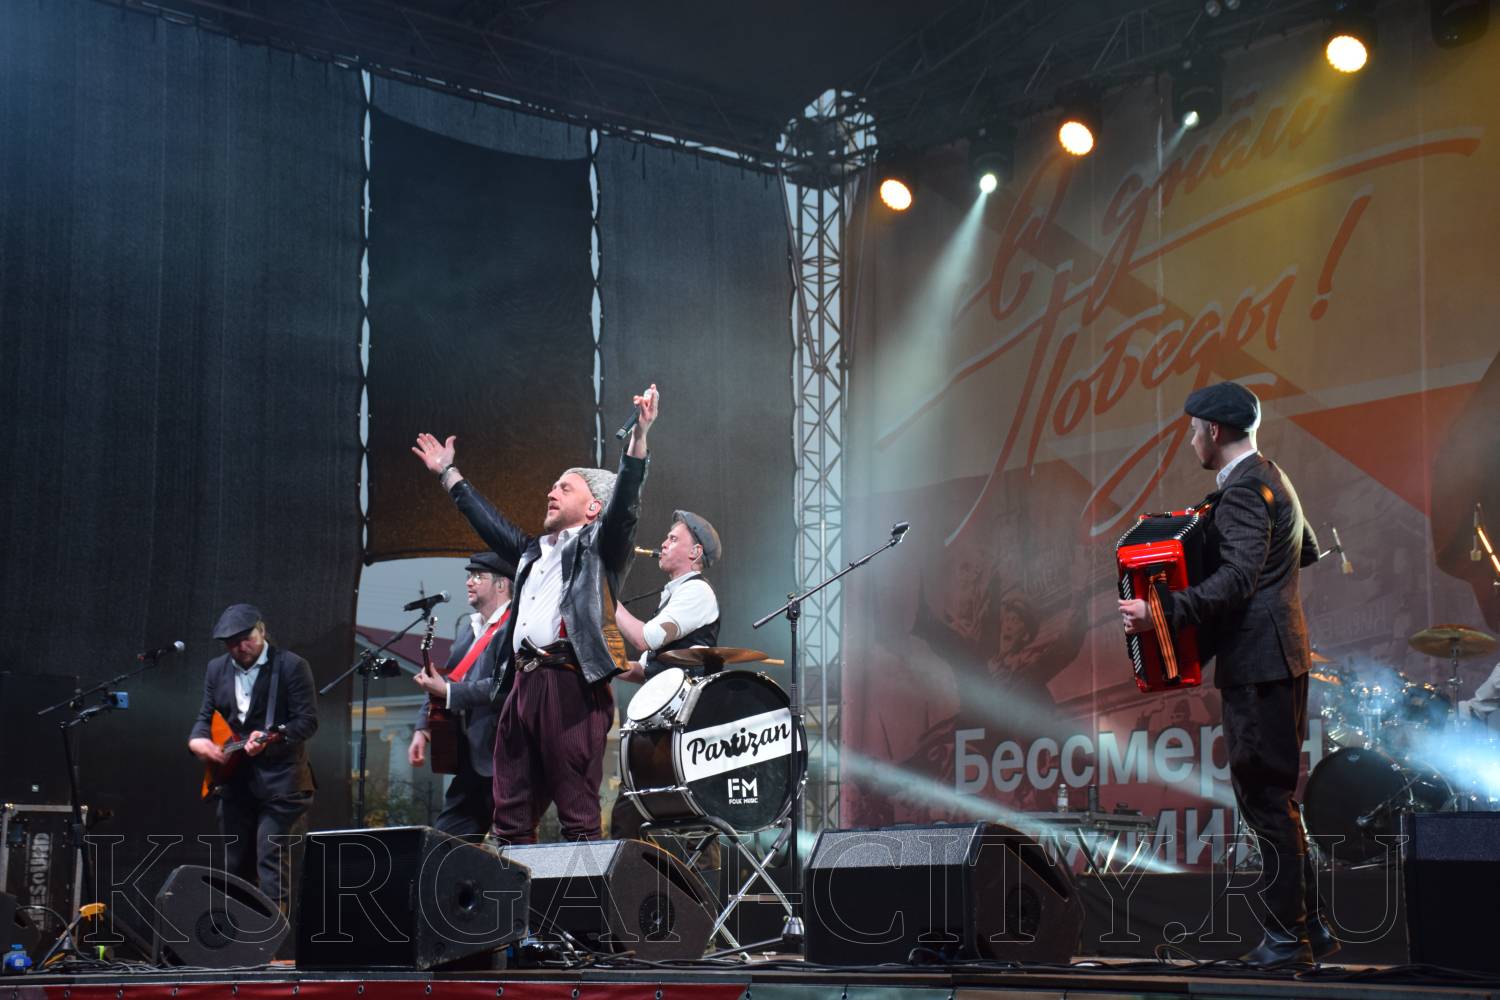 Курганцев поздравила с Днем Победы московская фолк-группа «Партизан FM».